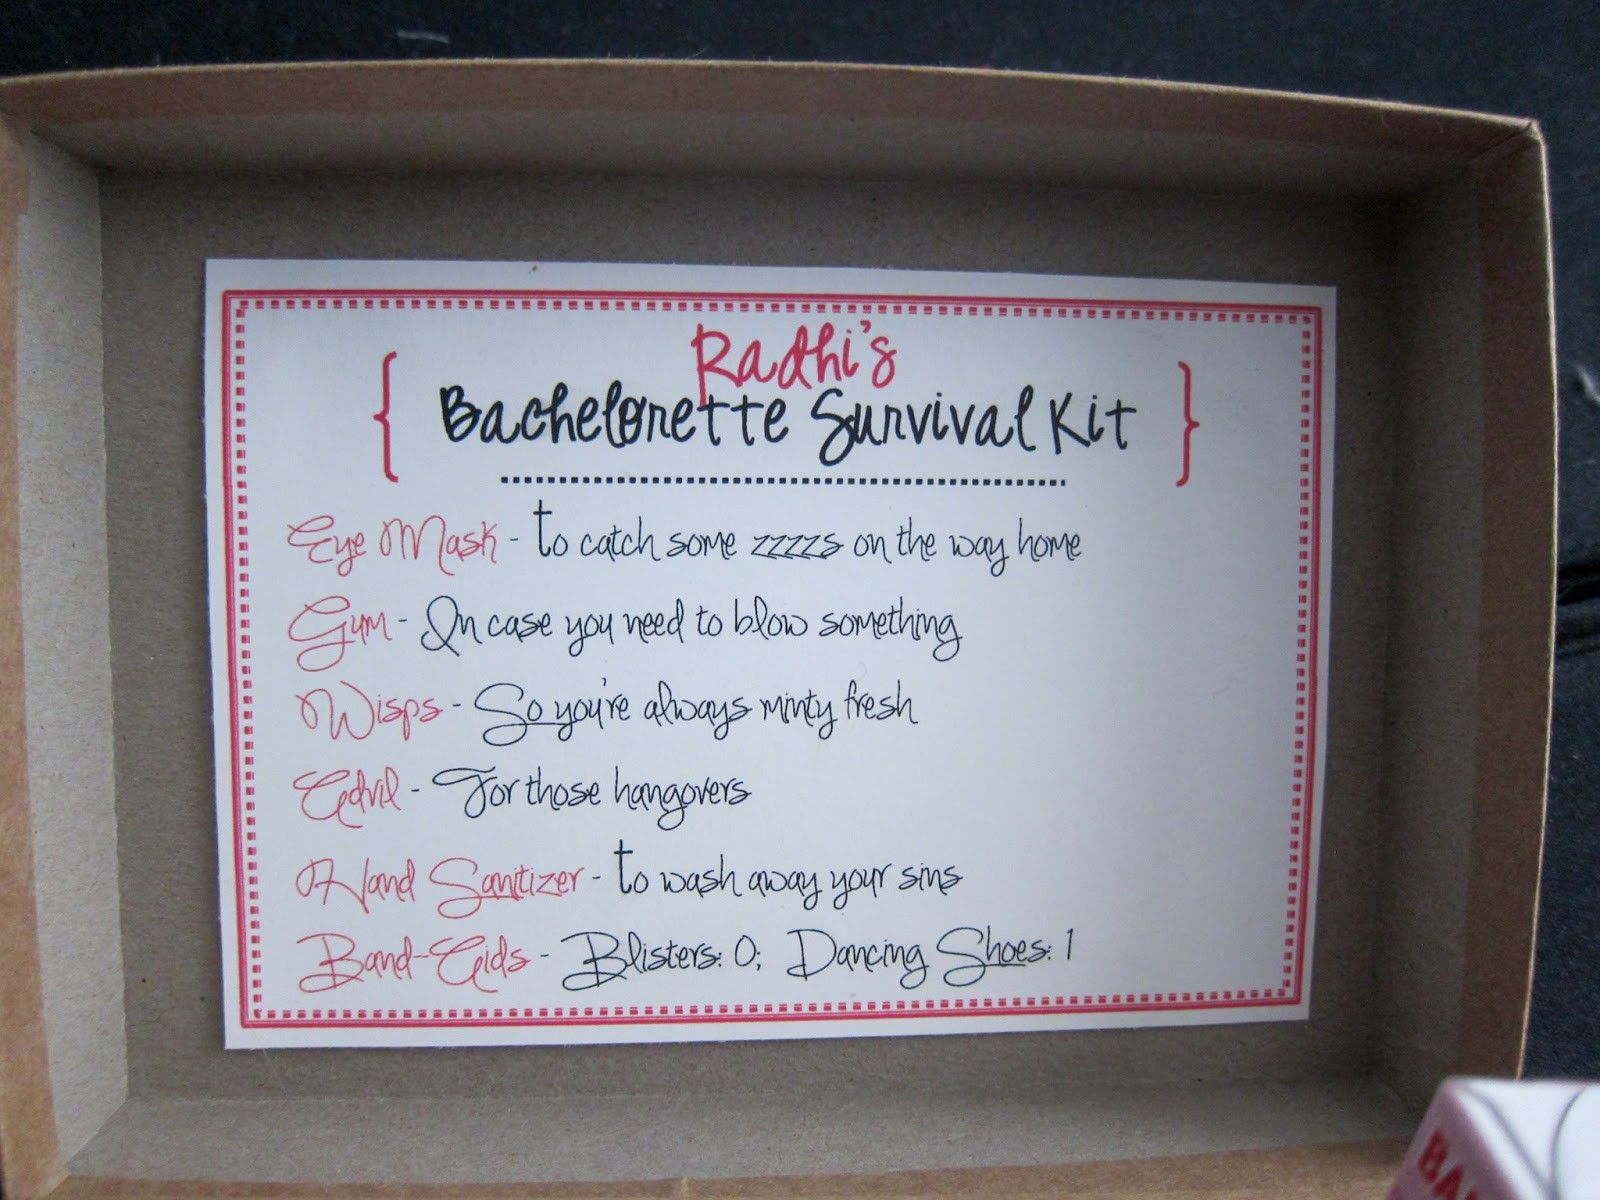 DIY Bachelorette Gift For Bride
 rnlMusings Gifting Survival Kits for the Bachelorette